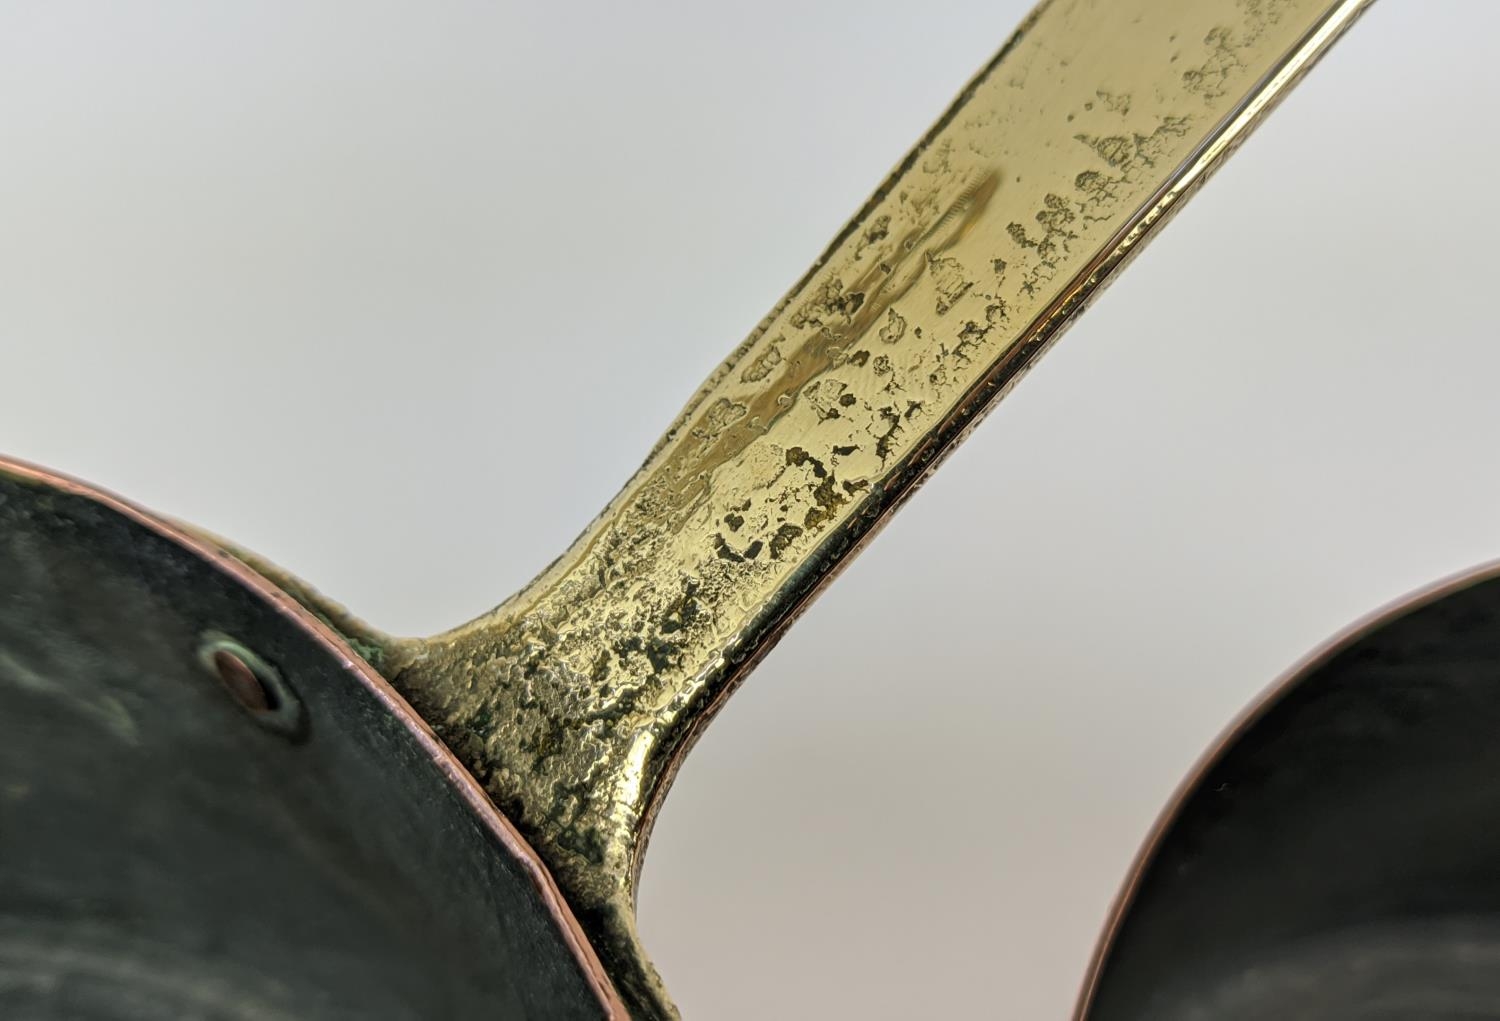 BATTERIE DE CUISINE, a graduated set of twelve, copper pans, with brass handles. (12) - Image 6 of 8